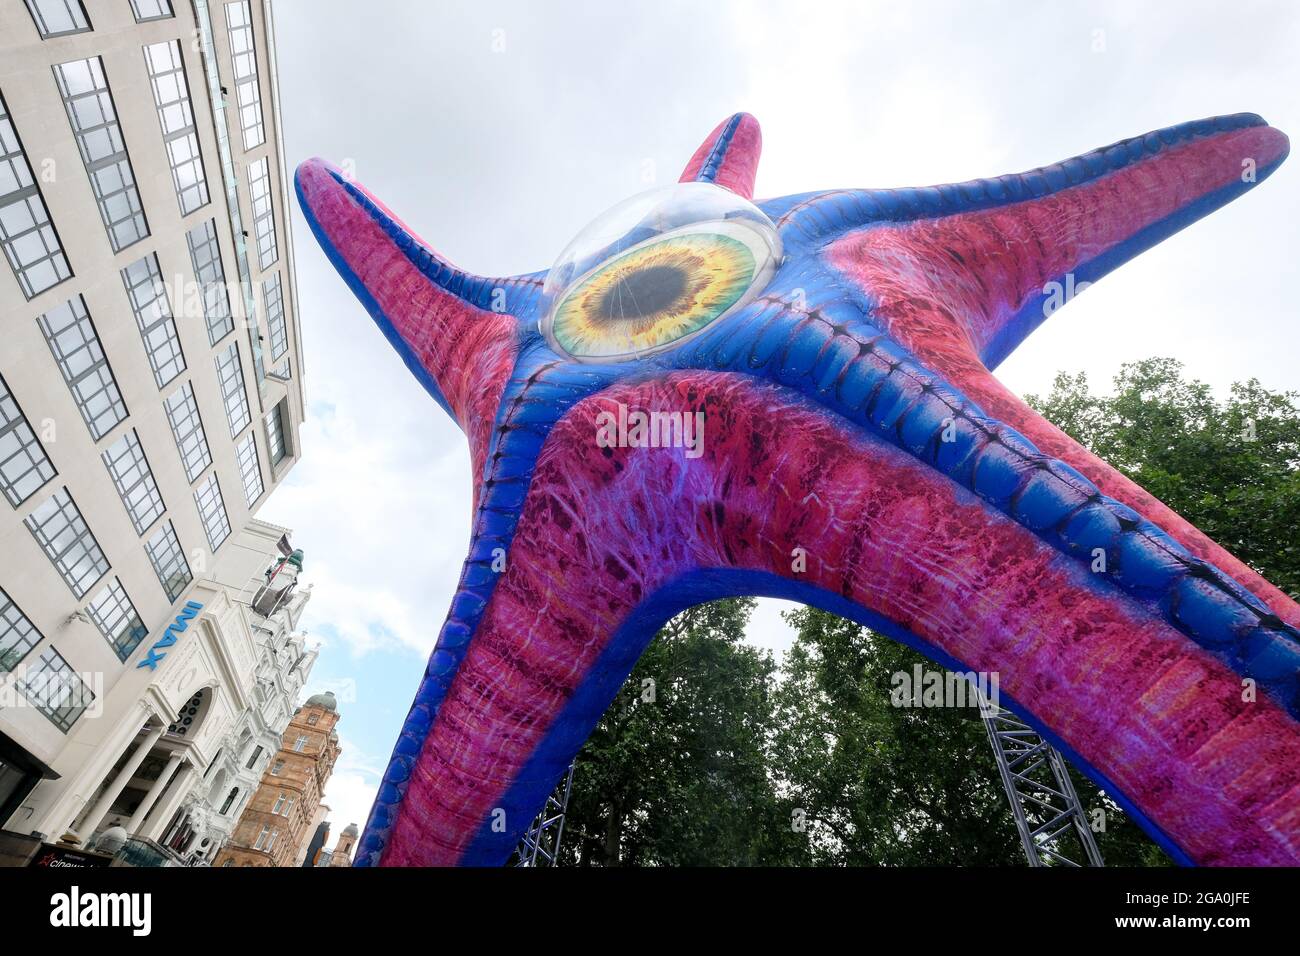 Leicester Square, Londres, Royaume-Uni. 28 juillet 2021. Une statue géante de Starro installée à Leicester Square pour l'ouverture de l'escouade de suicide. Crédit : Matthew Chattle/Alay Live News Banque D'Images